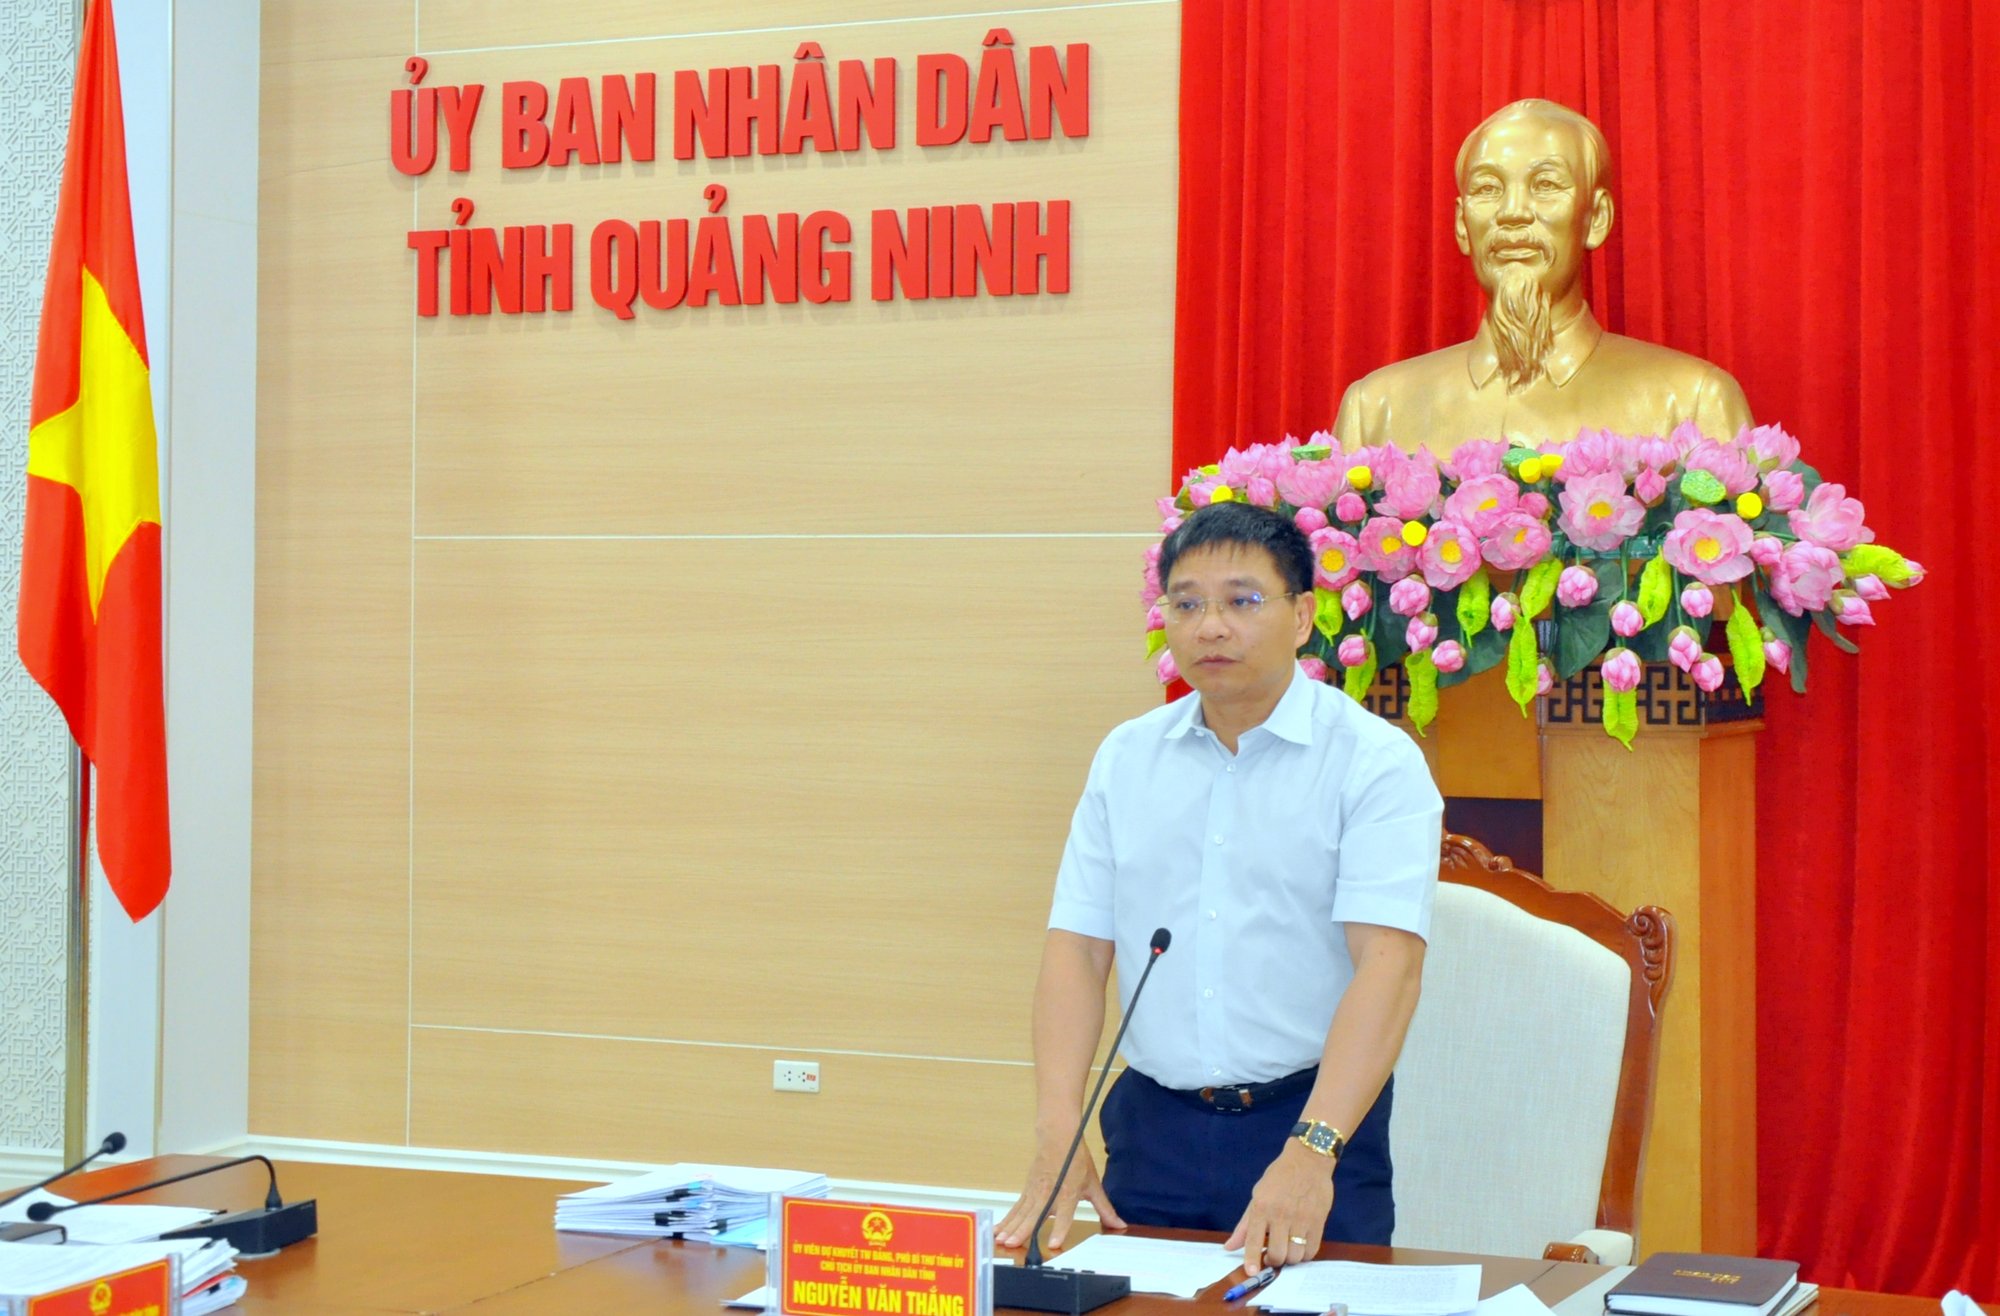 Chủ tịch UBND tỉnh Nguyễn Văn Thắng kết luận các nội dung của cuộc họp.